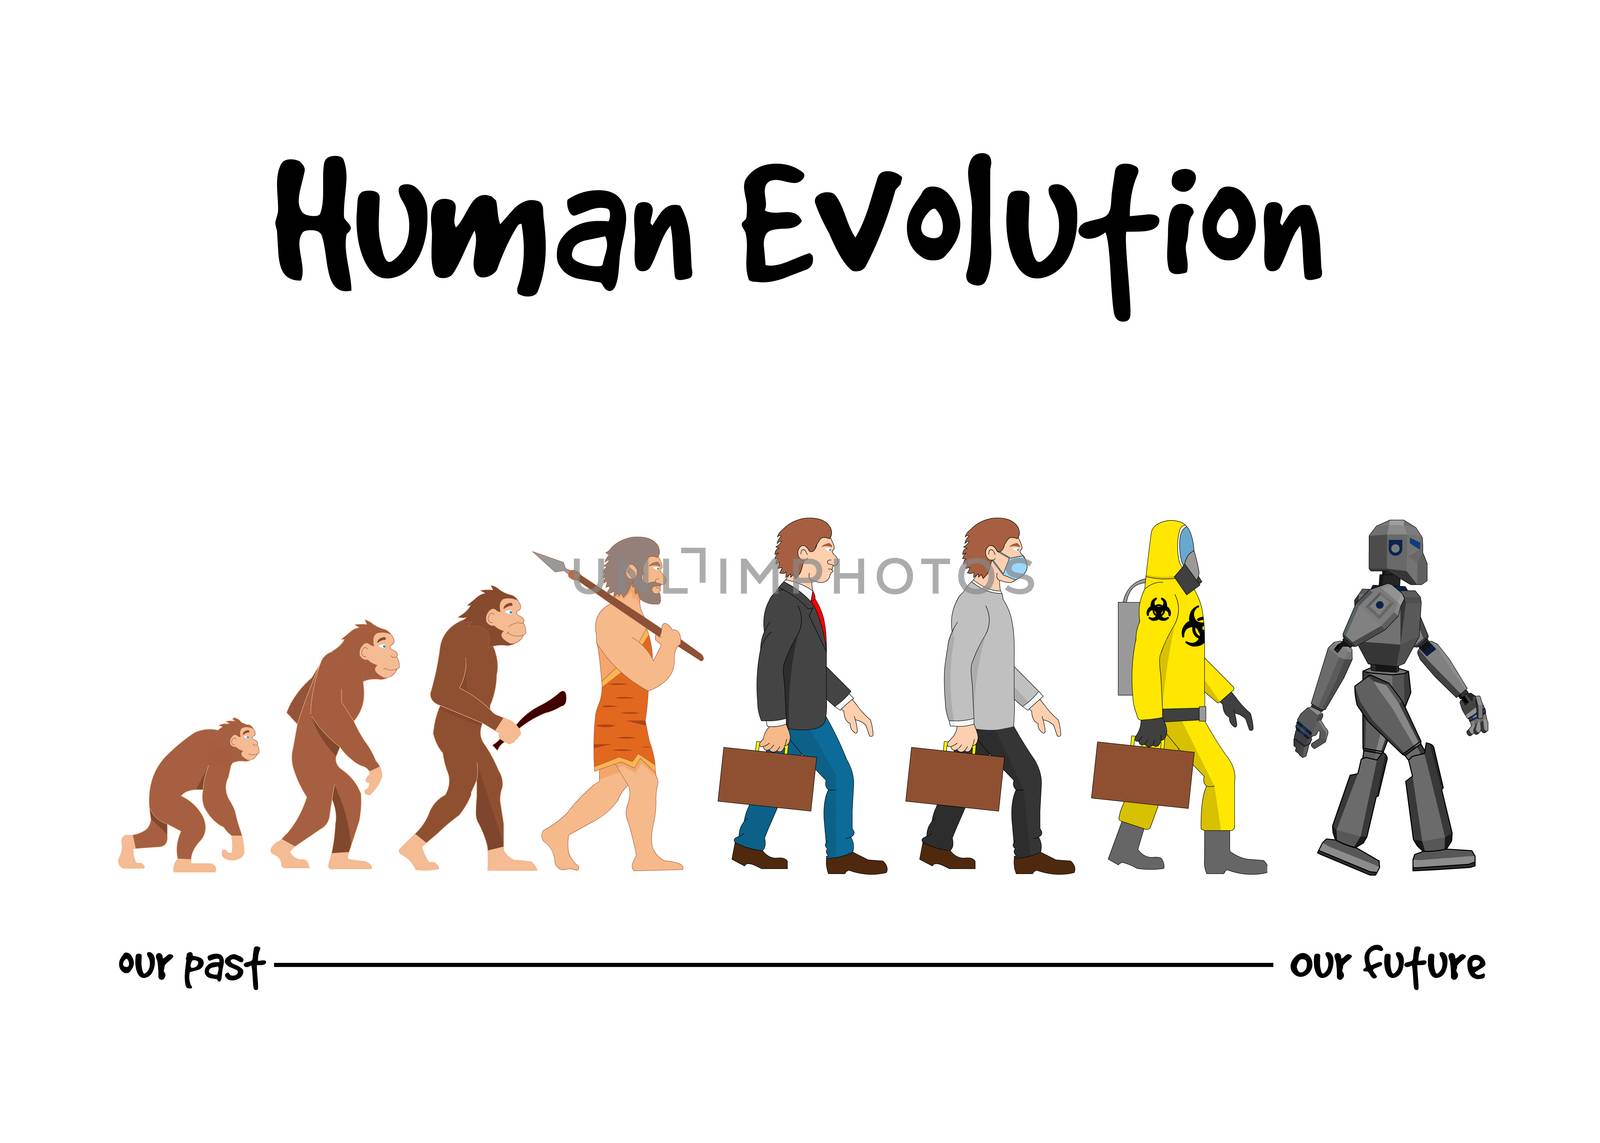 Evolution - our future